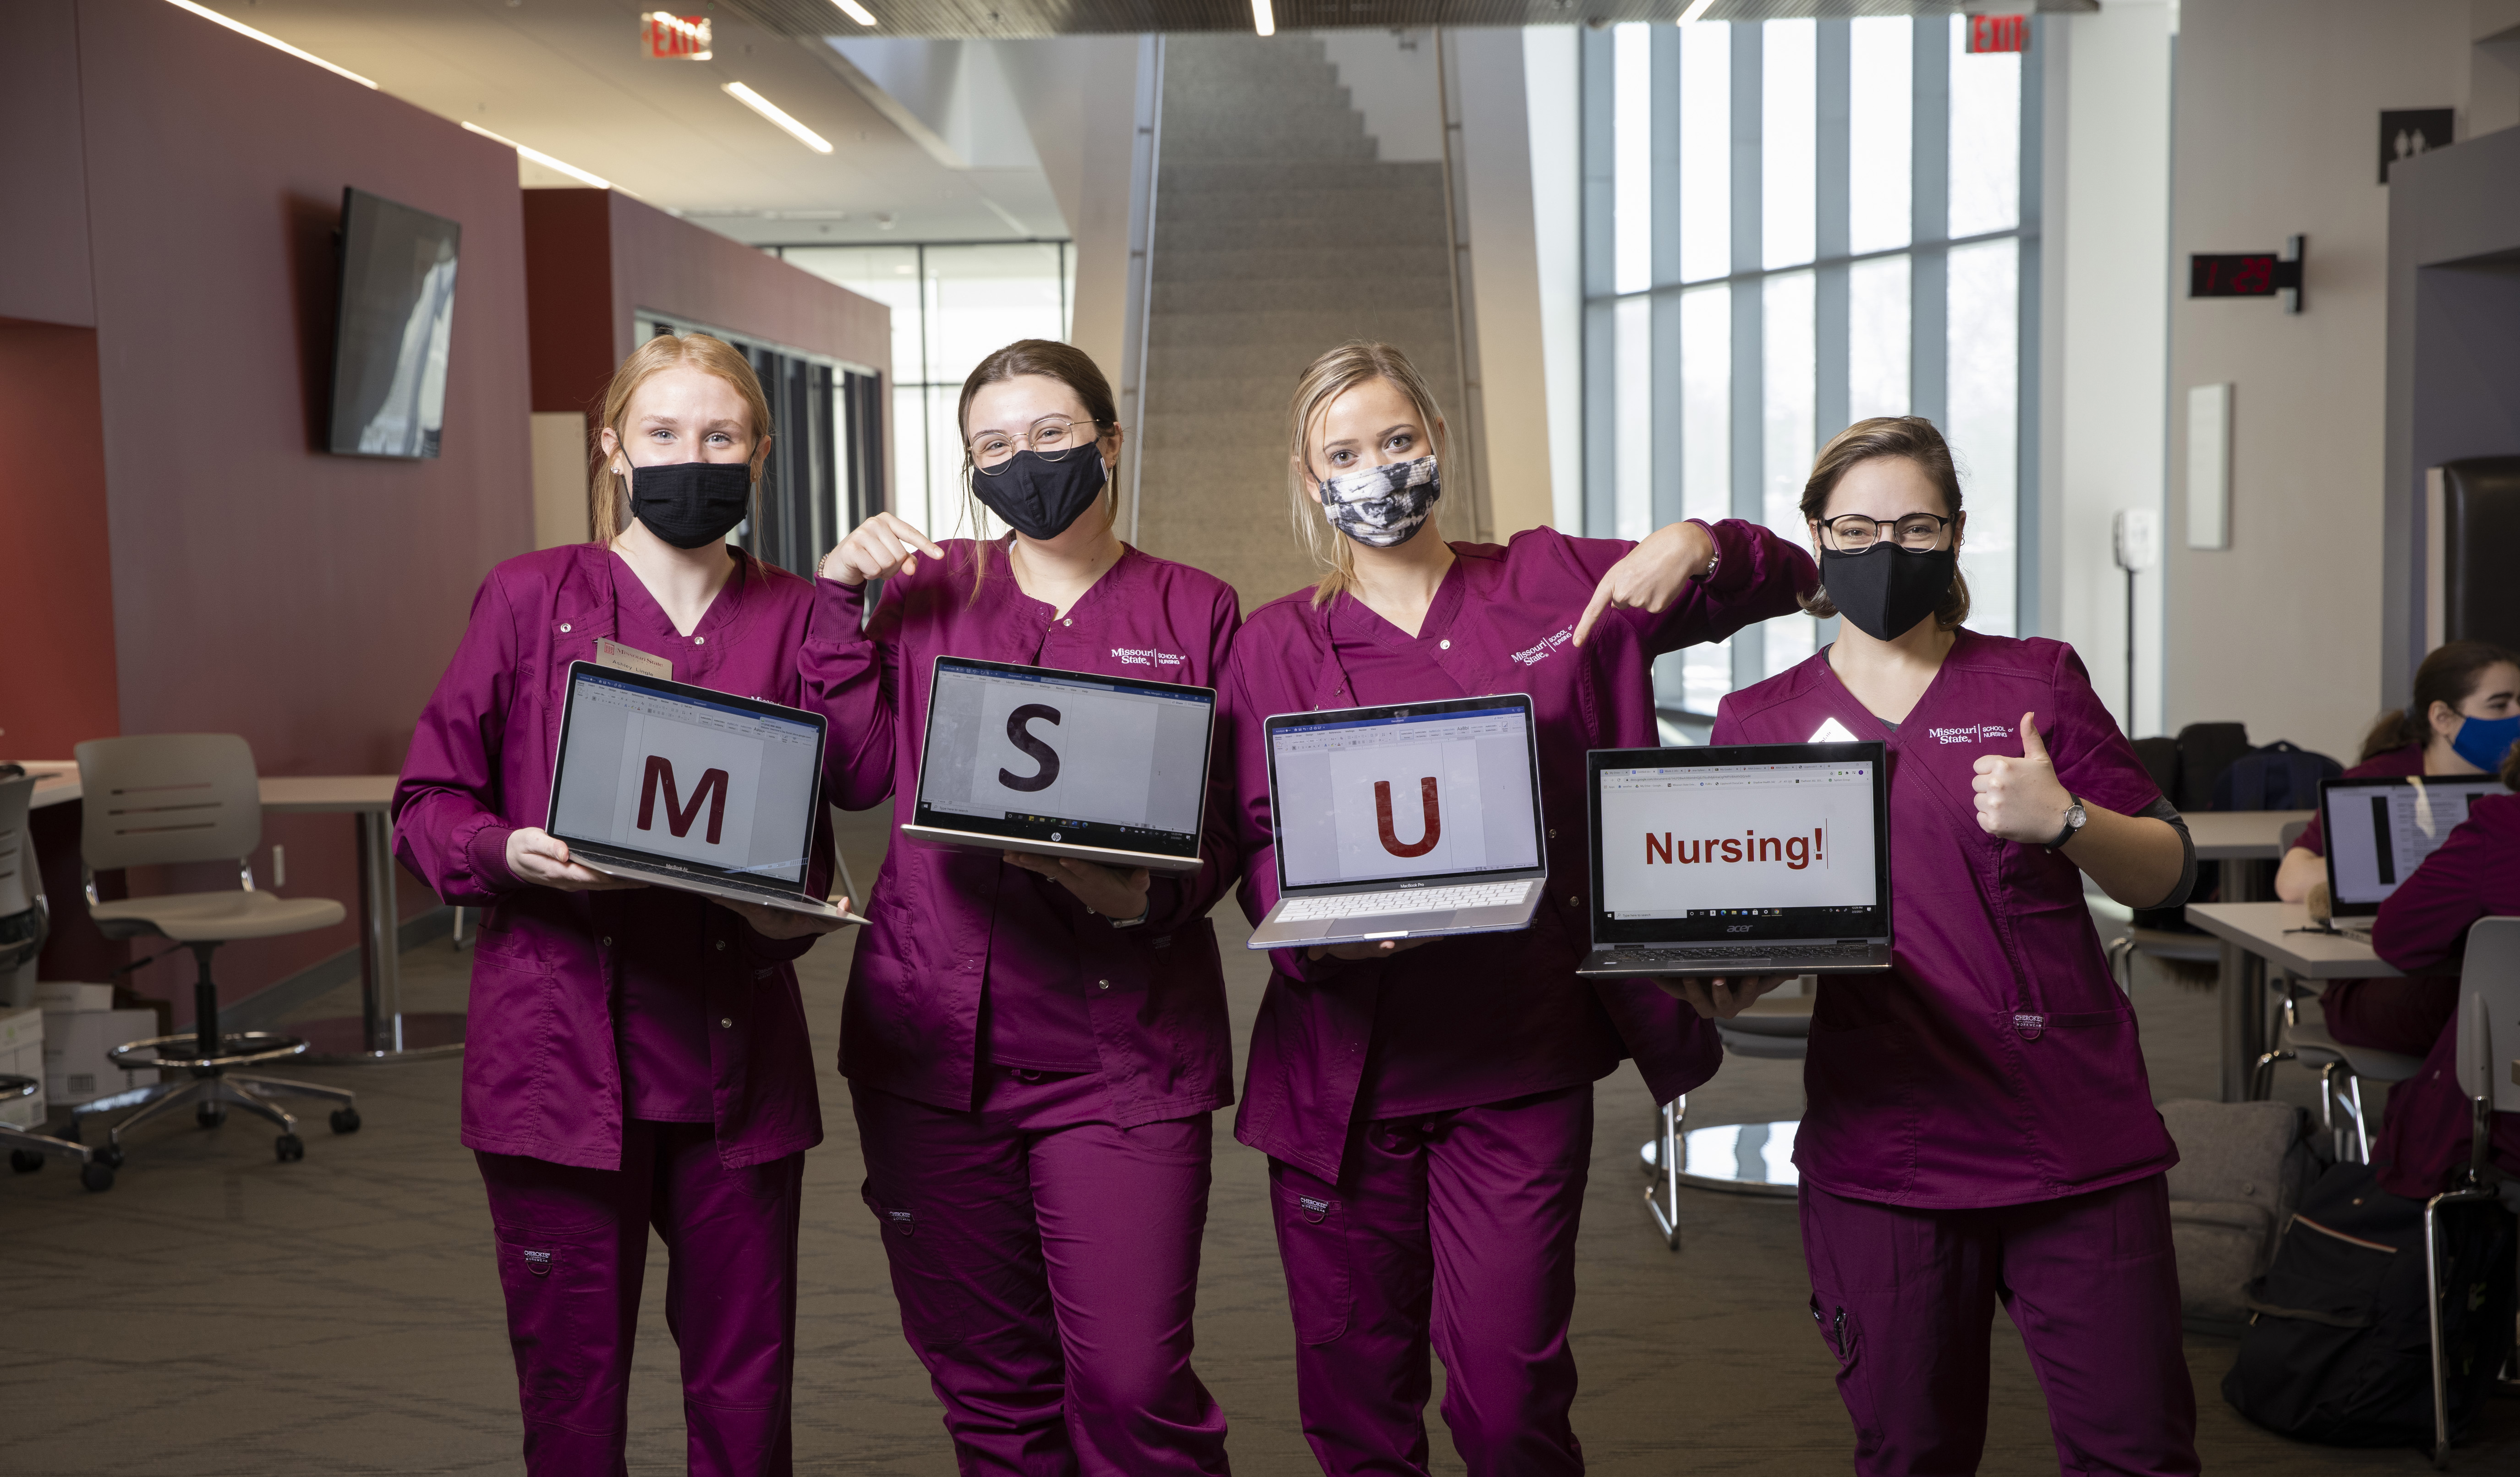 Nursing students displaying M S U Nursing on laptops.